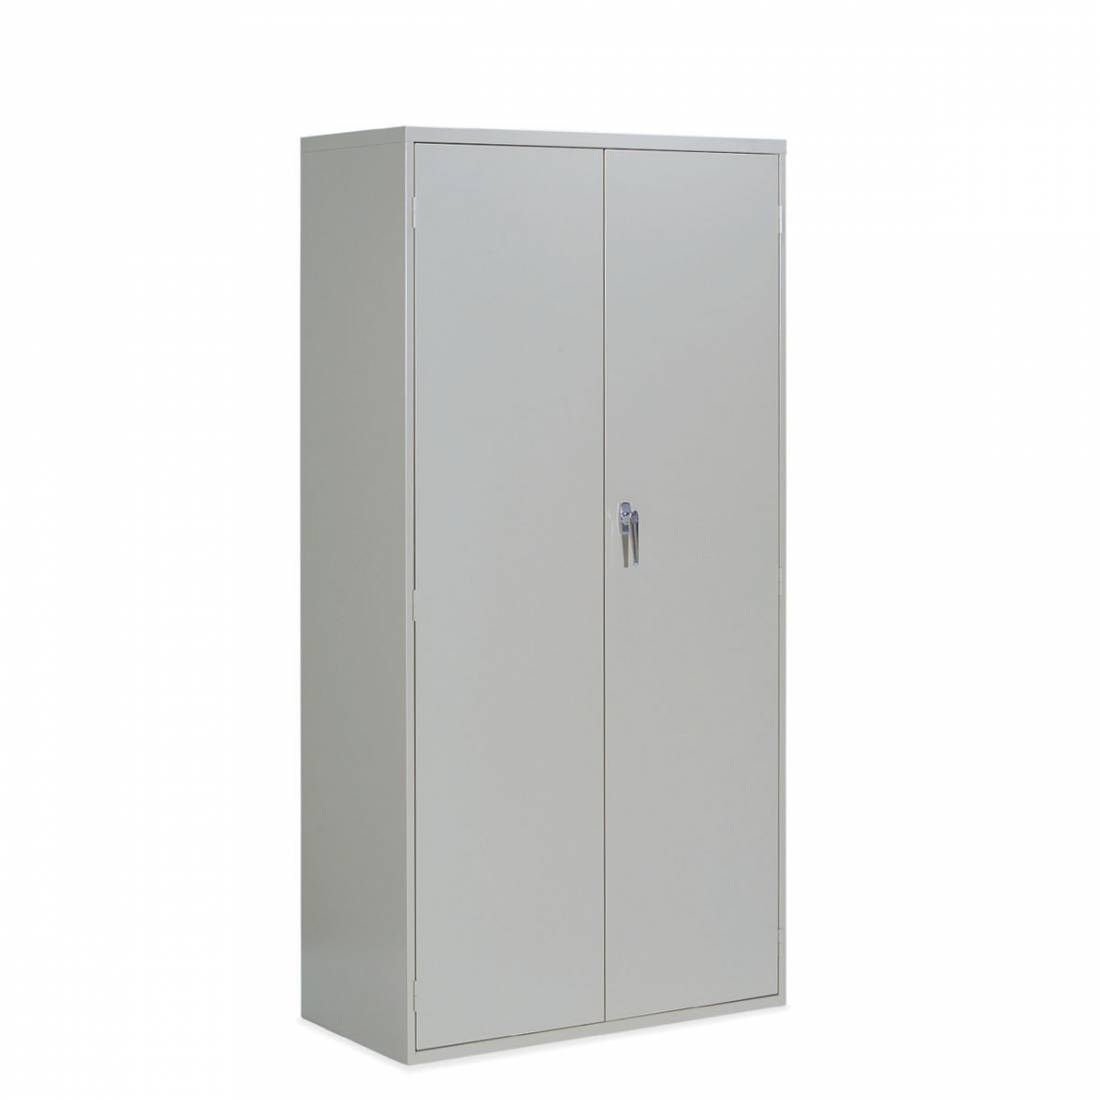 2 Door Storage Cabinet - One Fixed Shelf, Three Adjustable Shelves